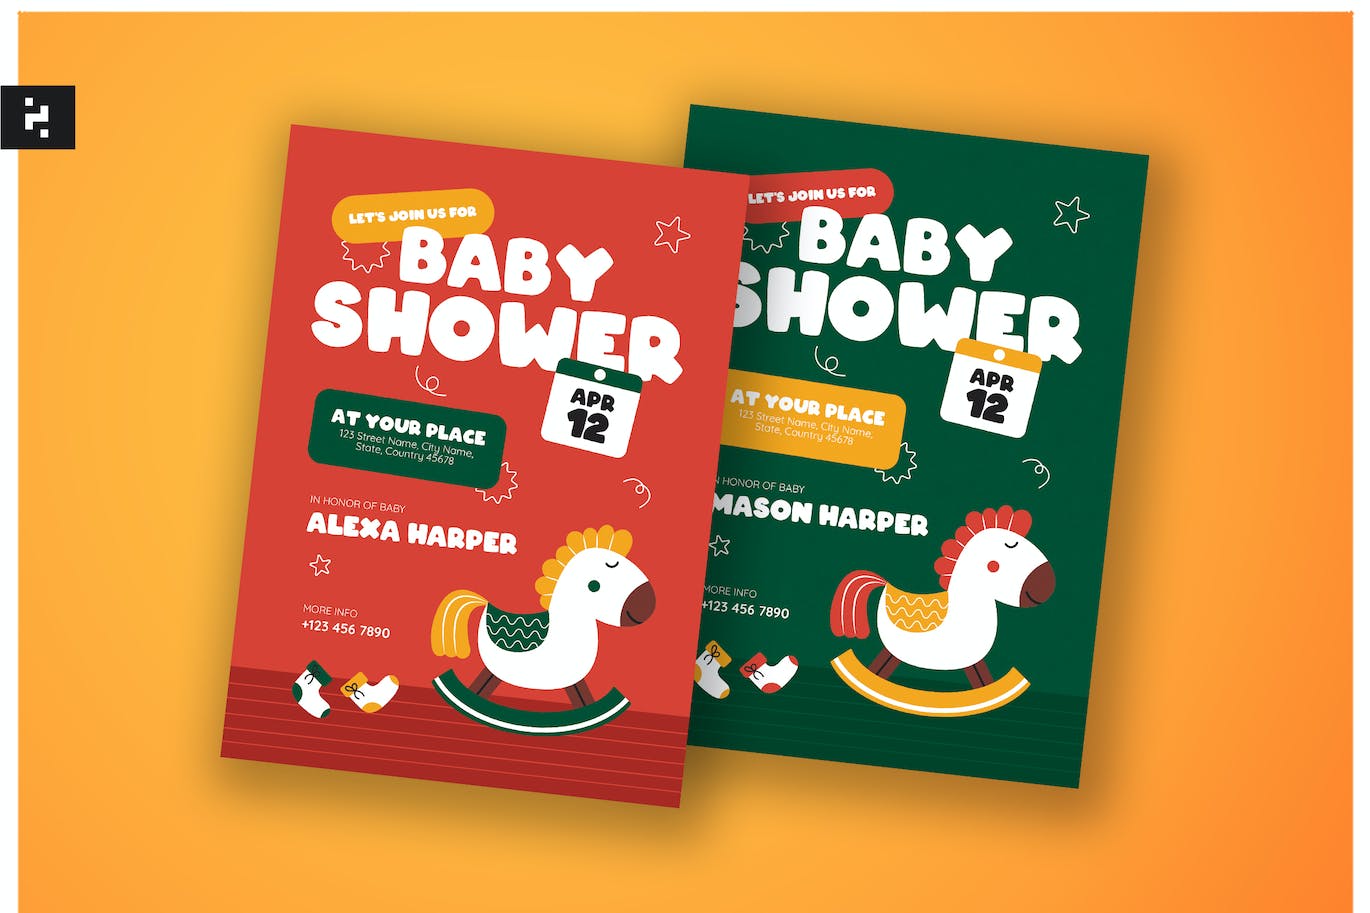 创意儿童婴儿沐浴邀请函设计模板 Creative Kids Baby Shower Invitation 设计素材 第1张